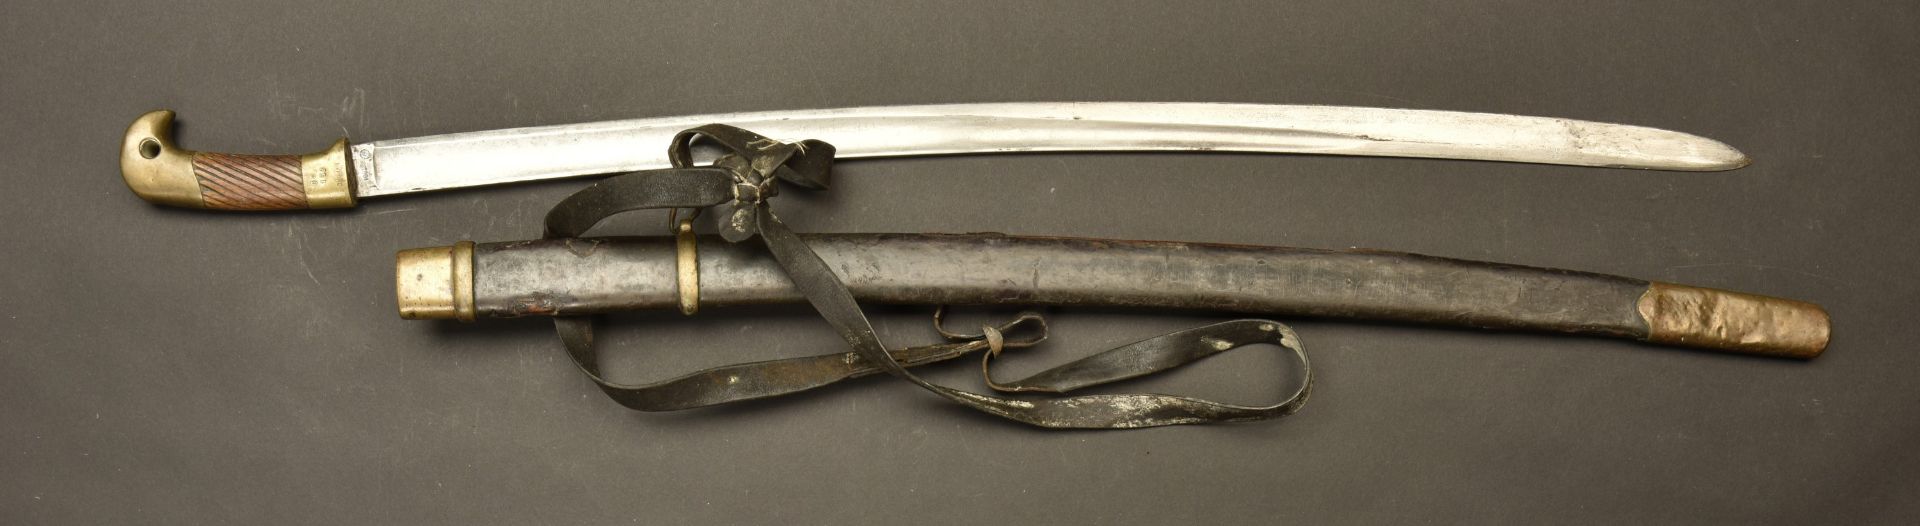 Sabre russe Shashka de Cosaque M1881 de 1901. Russian cossack sashka sword pattern 1881 dated 1901. 